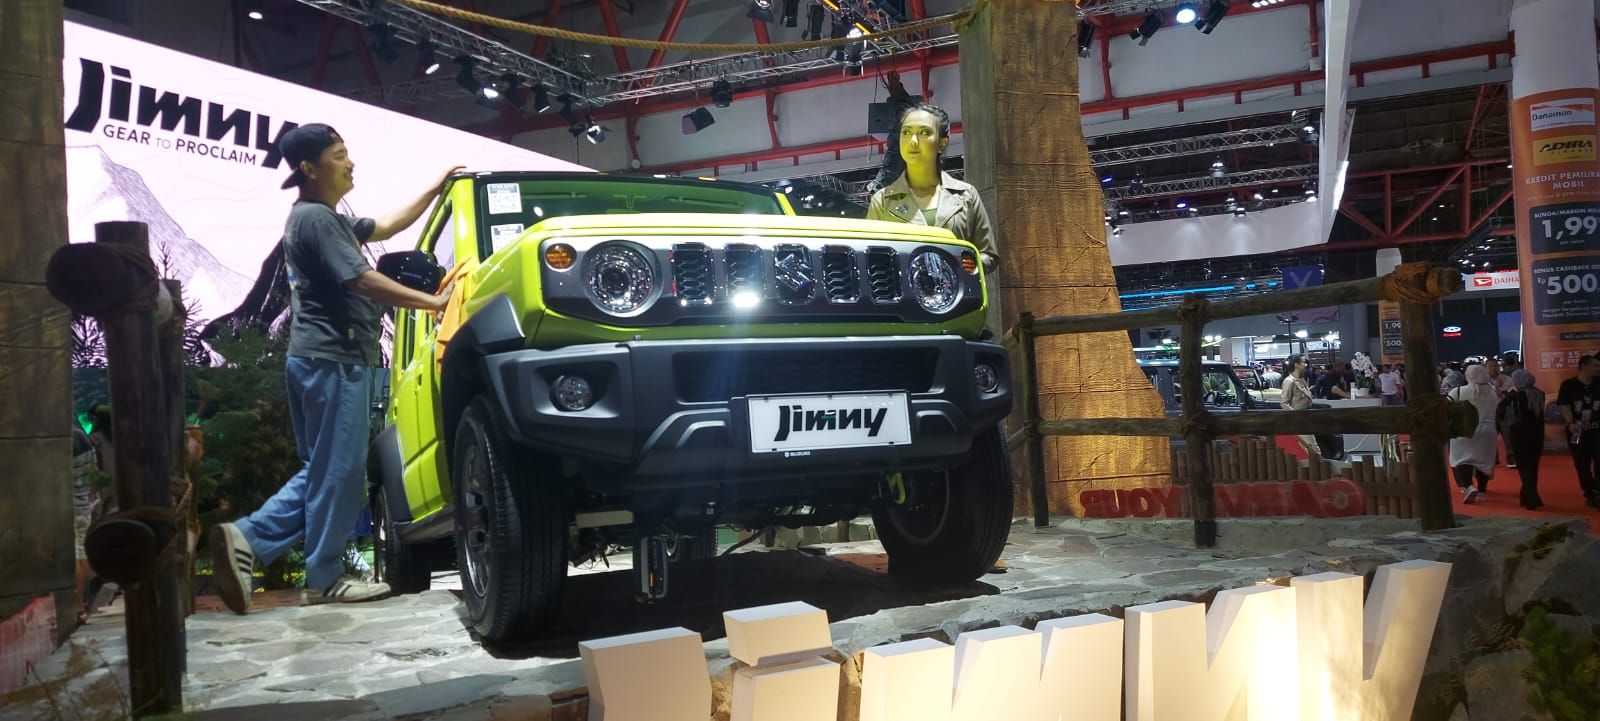 Peluncuran Suzuki Jimny 5-door.